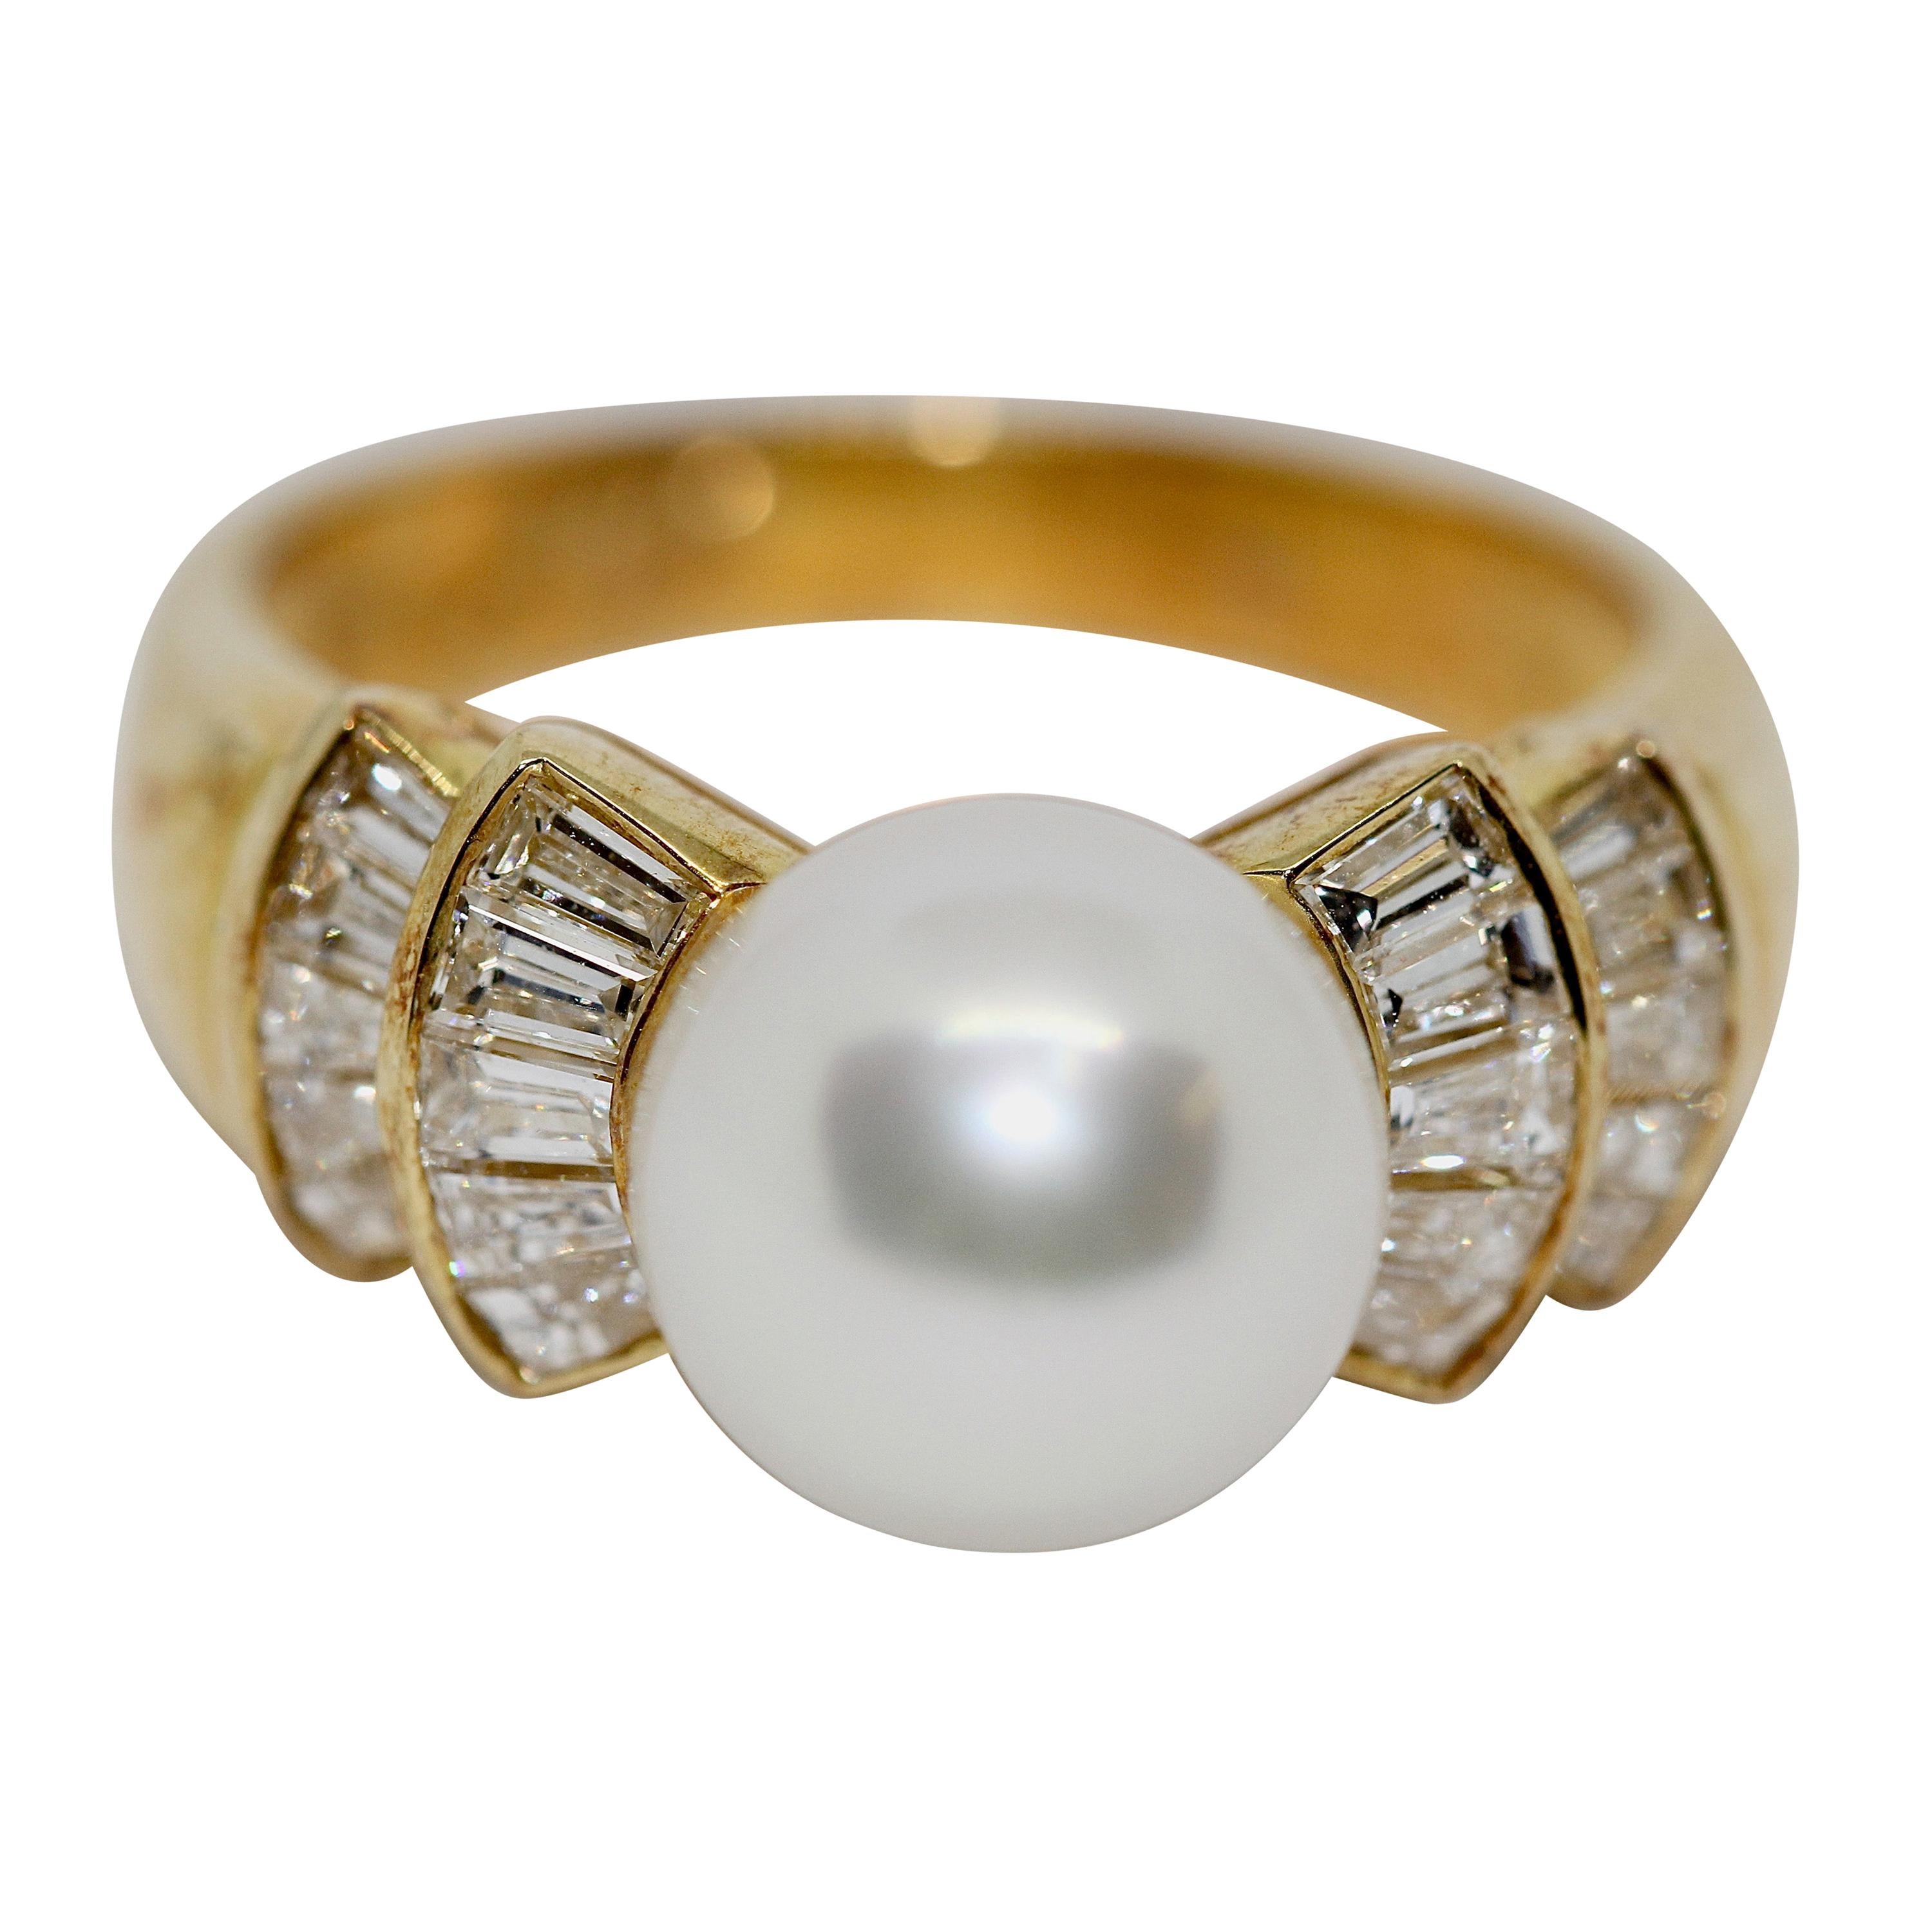 Bague pour femme en or 18 carats sertie de 20 diamants et perles, par Wempe